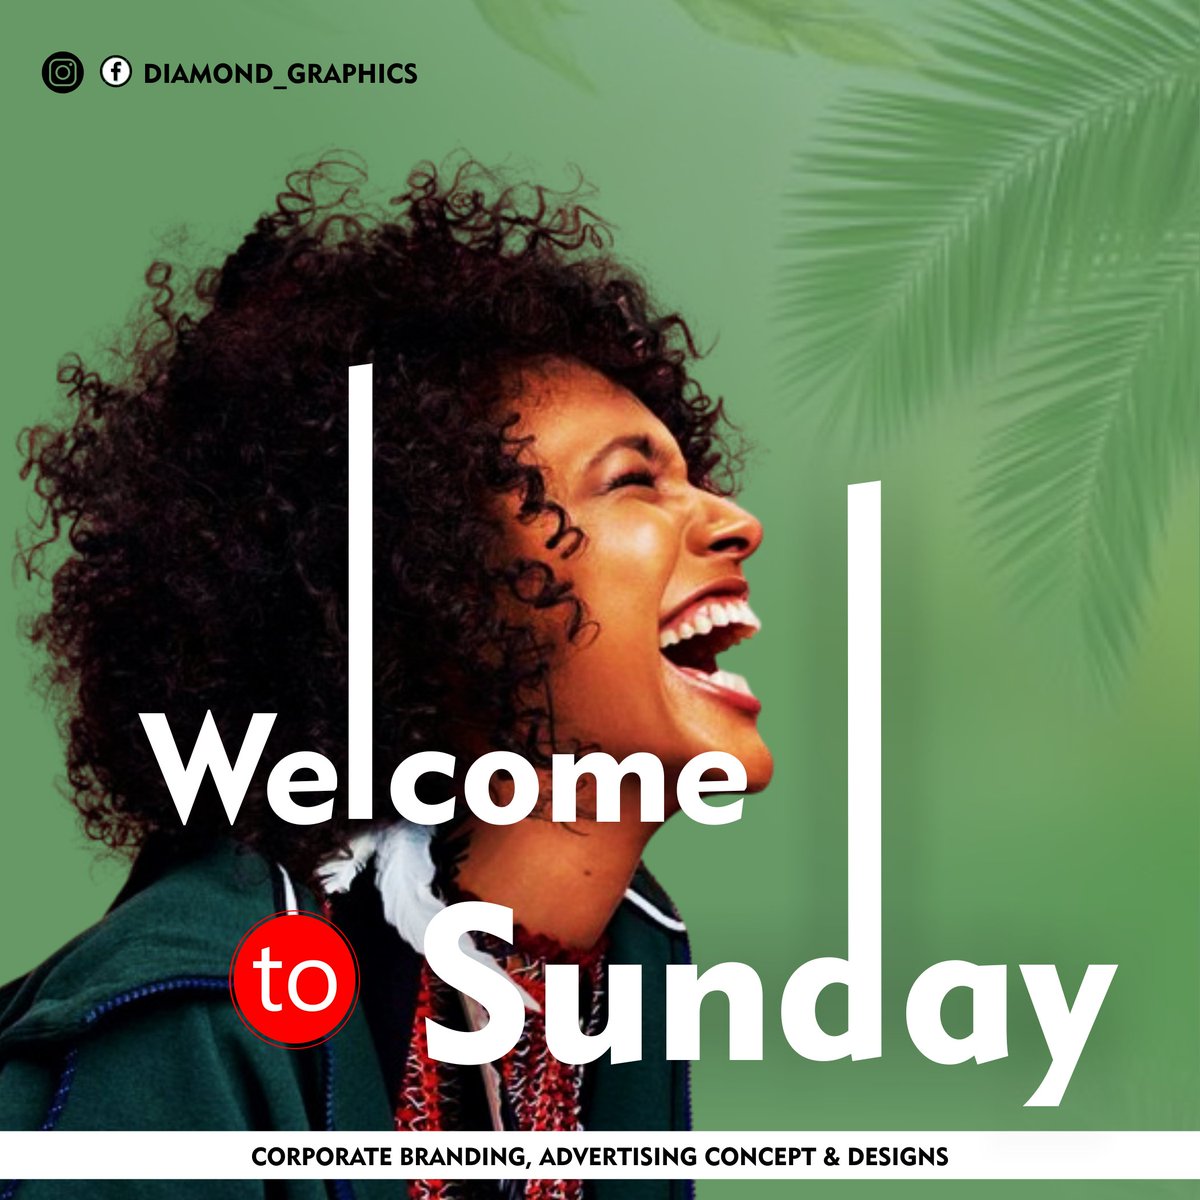 Welcome to Sunday everyone 
#coreldraw @pinterestbiz @CorelDRAW @CorelDrawX7 @AdobeDesign @UniqHazel @_LadyBIC @Jessica_Egbedi